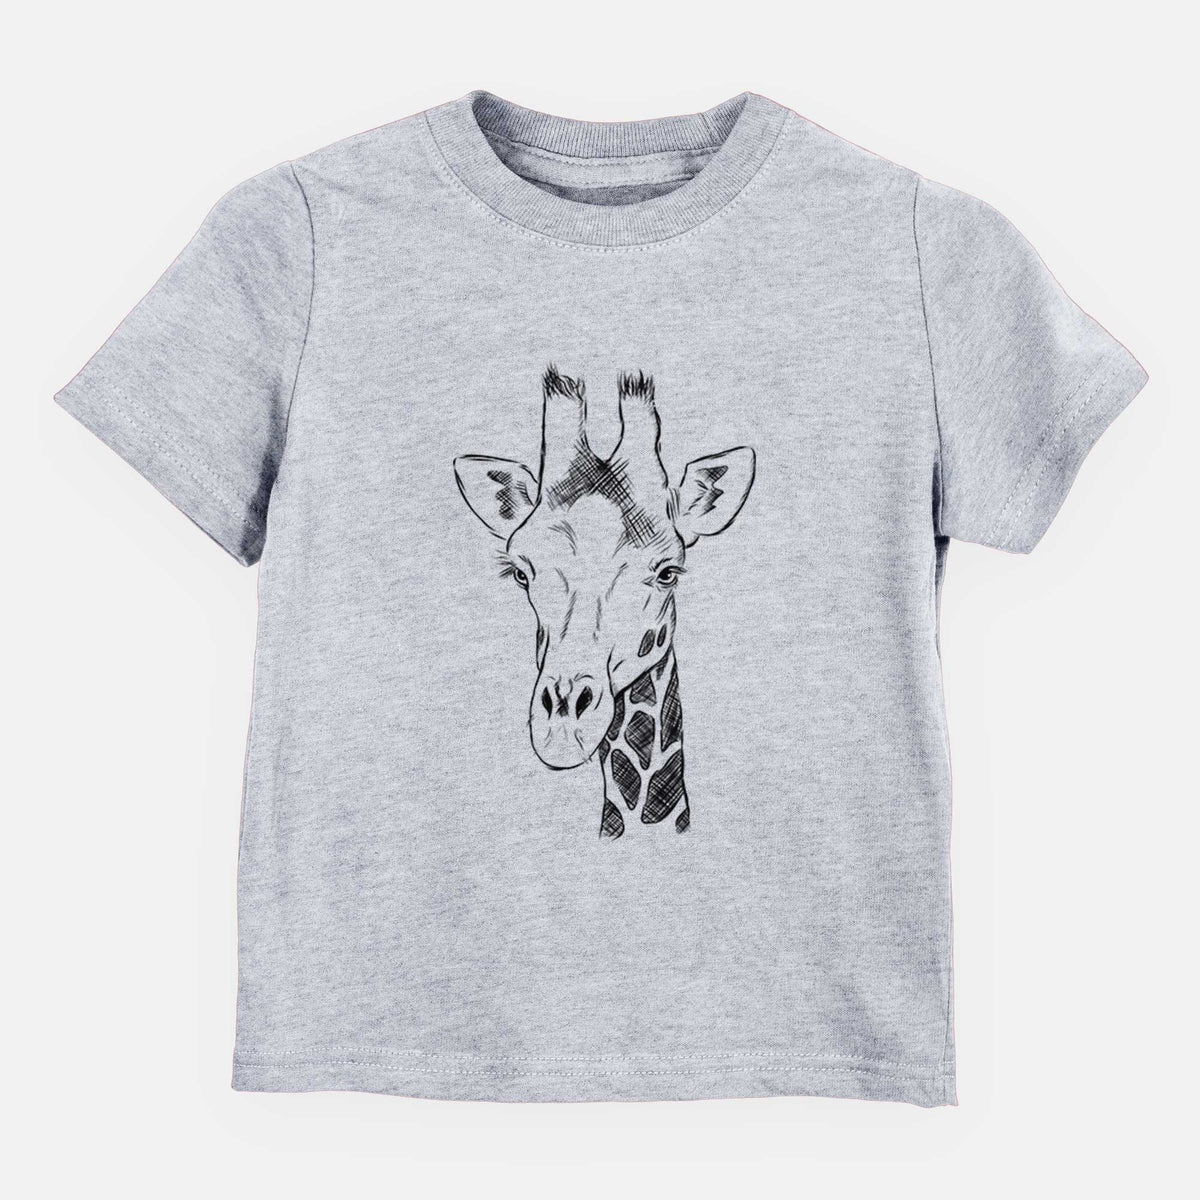 Southern Giraffe - Giraffa giraffa - Kids Shirt